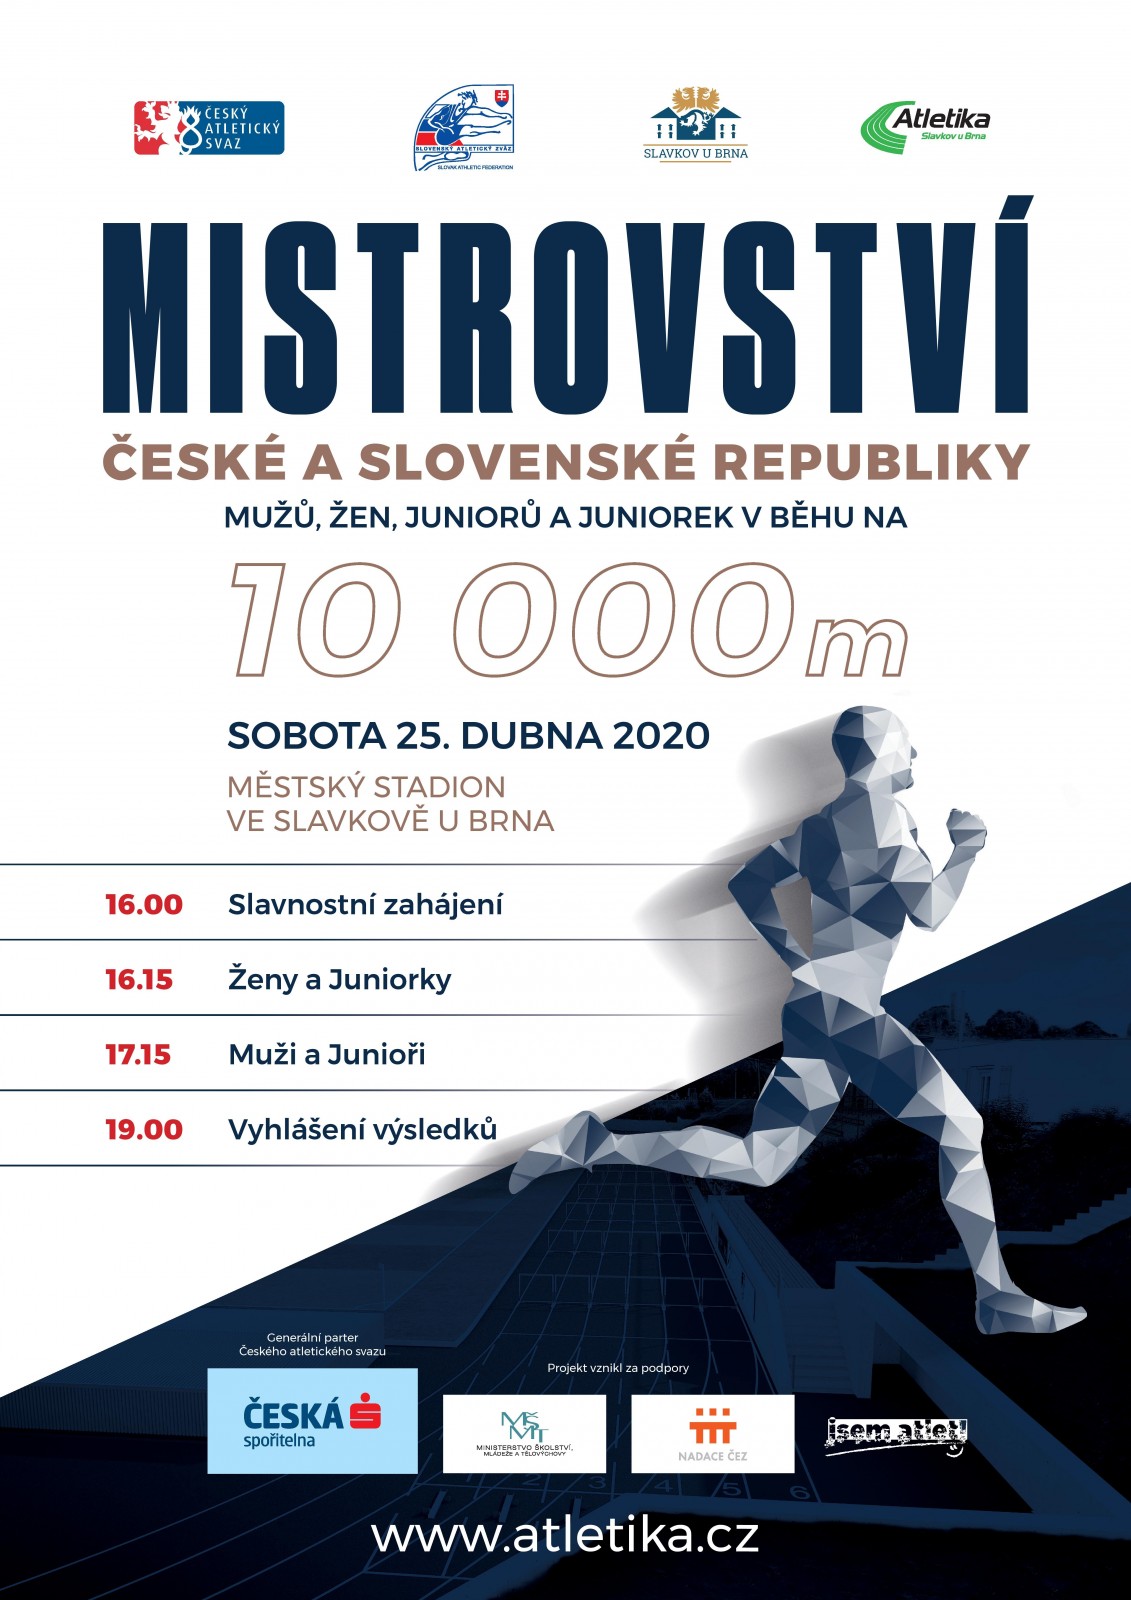 Mistrovství České republiky v běhu na 10000m na dráze